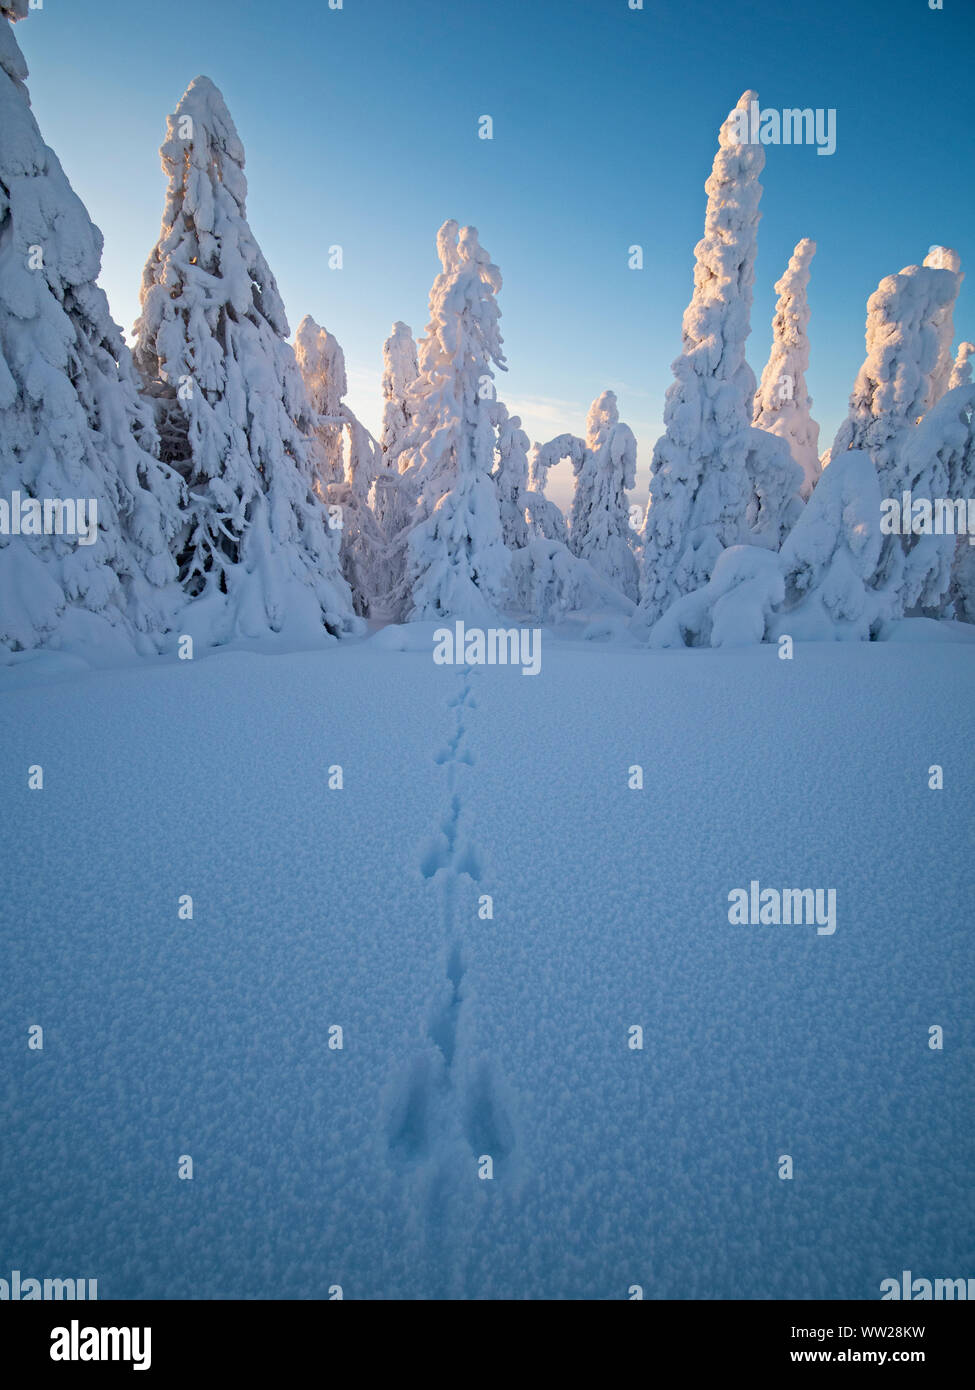 Hase Fußspuren im Schnee durch Fichten verdeckt im Schnee Ruka Peak Kuusamo Finnland Januar. Wenn Schnee Umhänge Fichten so es eine bekannt ist. Stockfoto